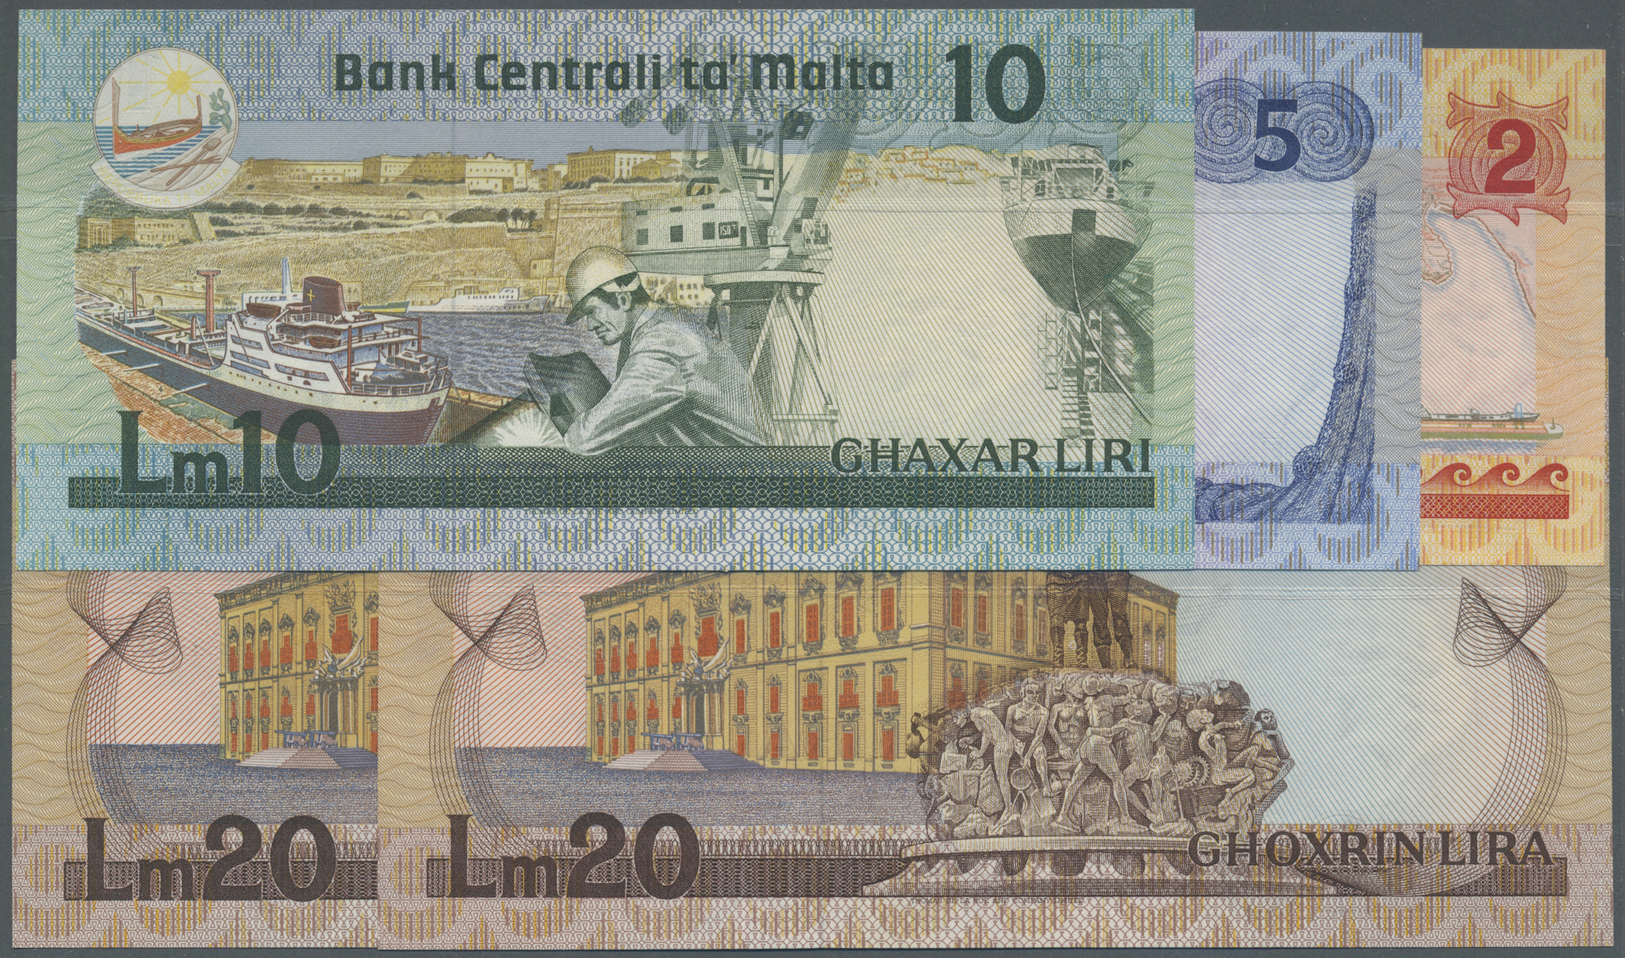 01670 Malta: Set With 5 Banknotes L. 1967 (1986) "Agata Barbara" Issue With 2, 5, 10, 20 Liri And 20 Liri Specimen P.37- - Malta